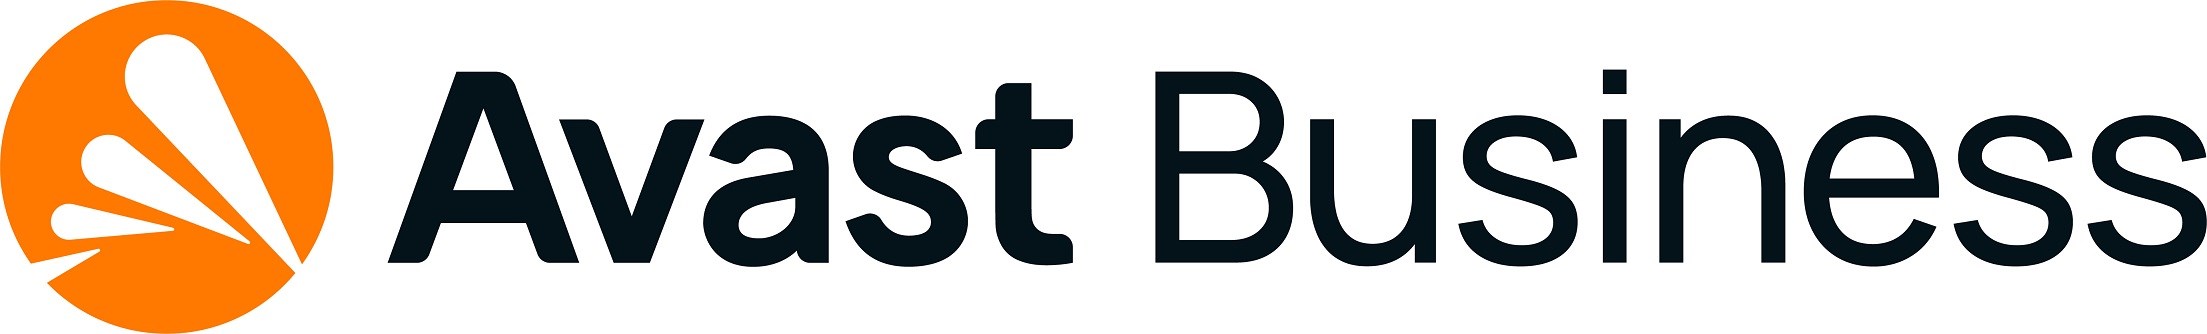 _Nový Avast Business Cloud Backup (100 GB) 1ks na 12 mesiacov0 